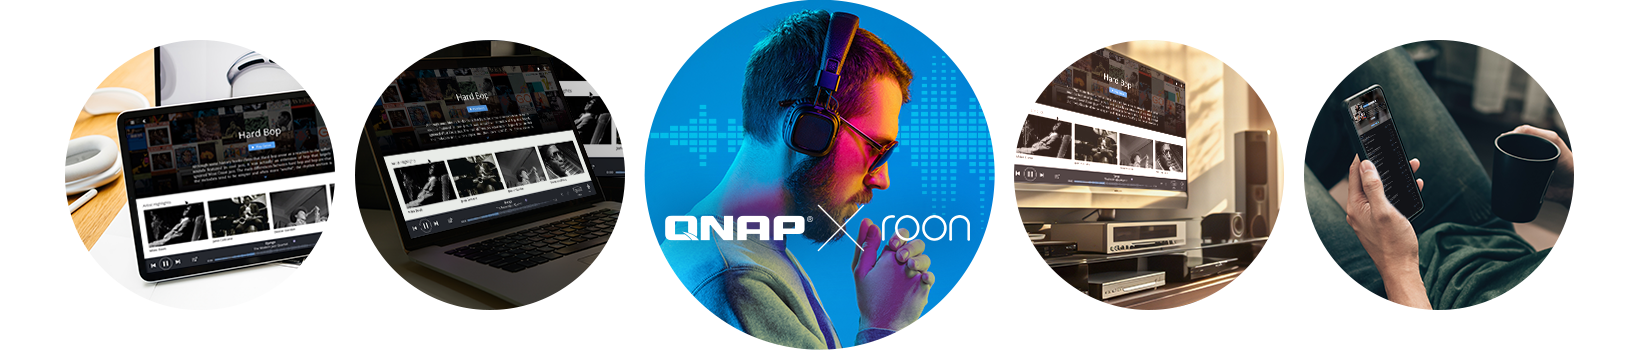 Przy użyciu aplikacji Roon możesz utworzyć najlepszy serwer muzyczny